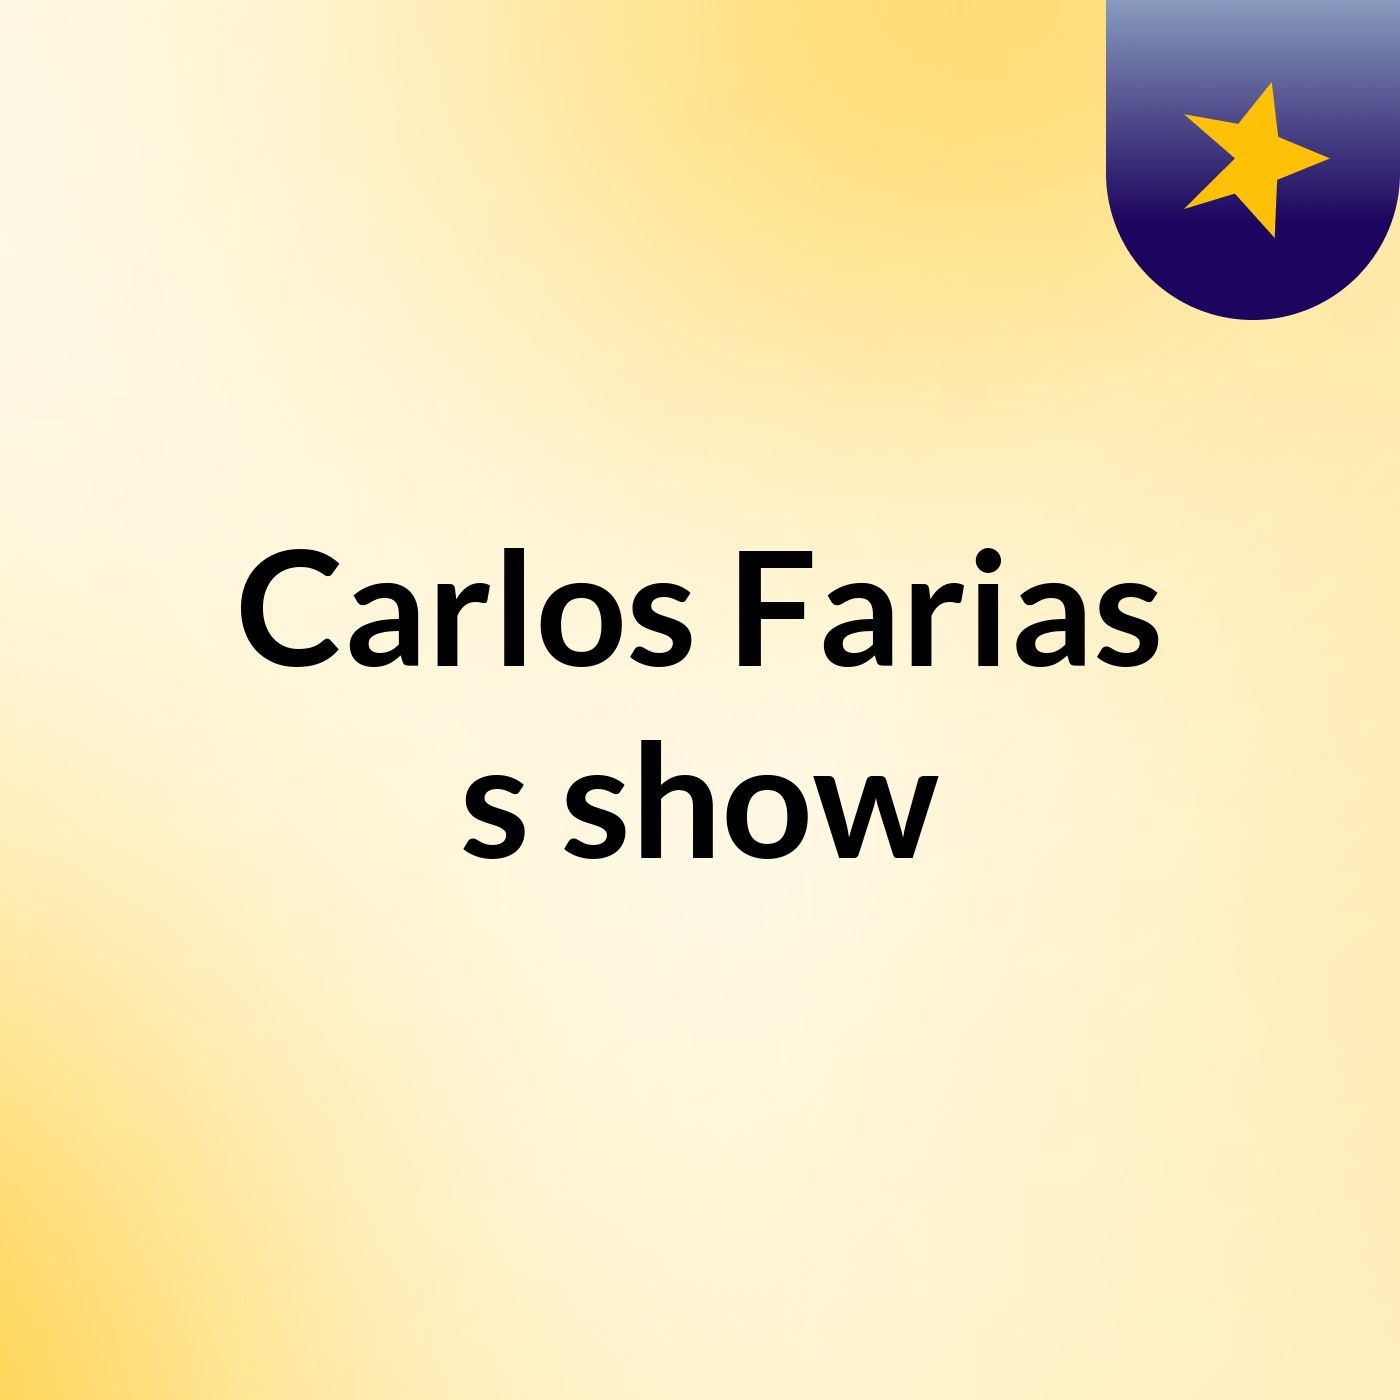 Carlos Farias's show